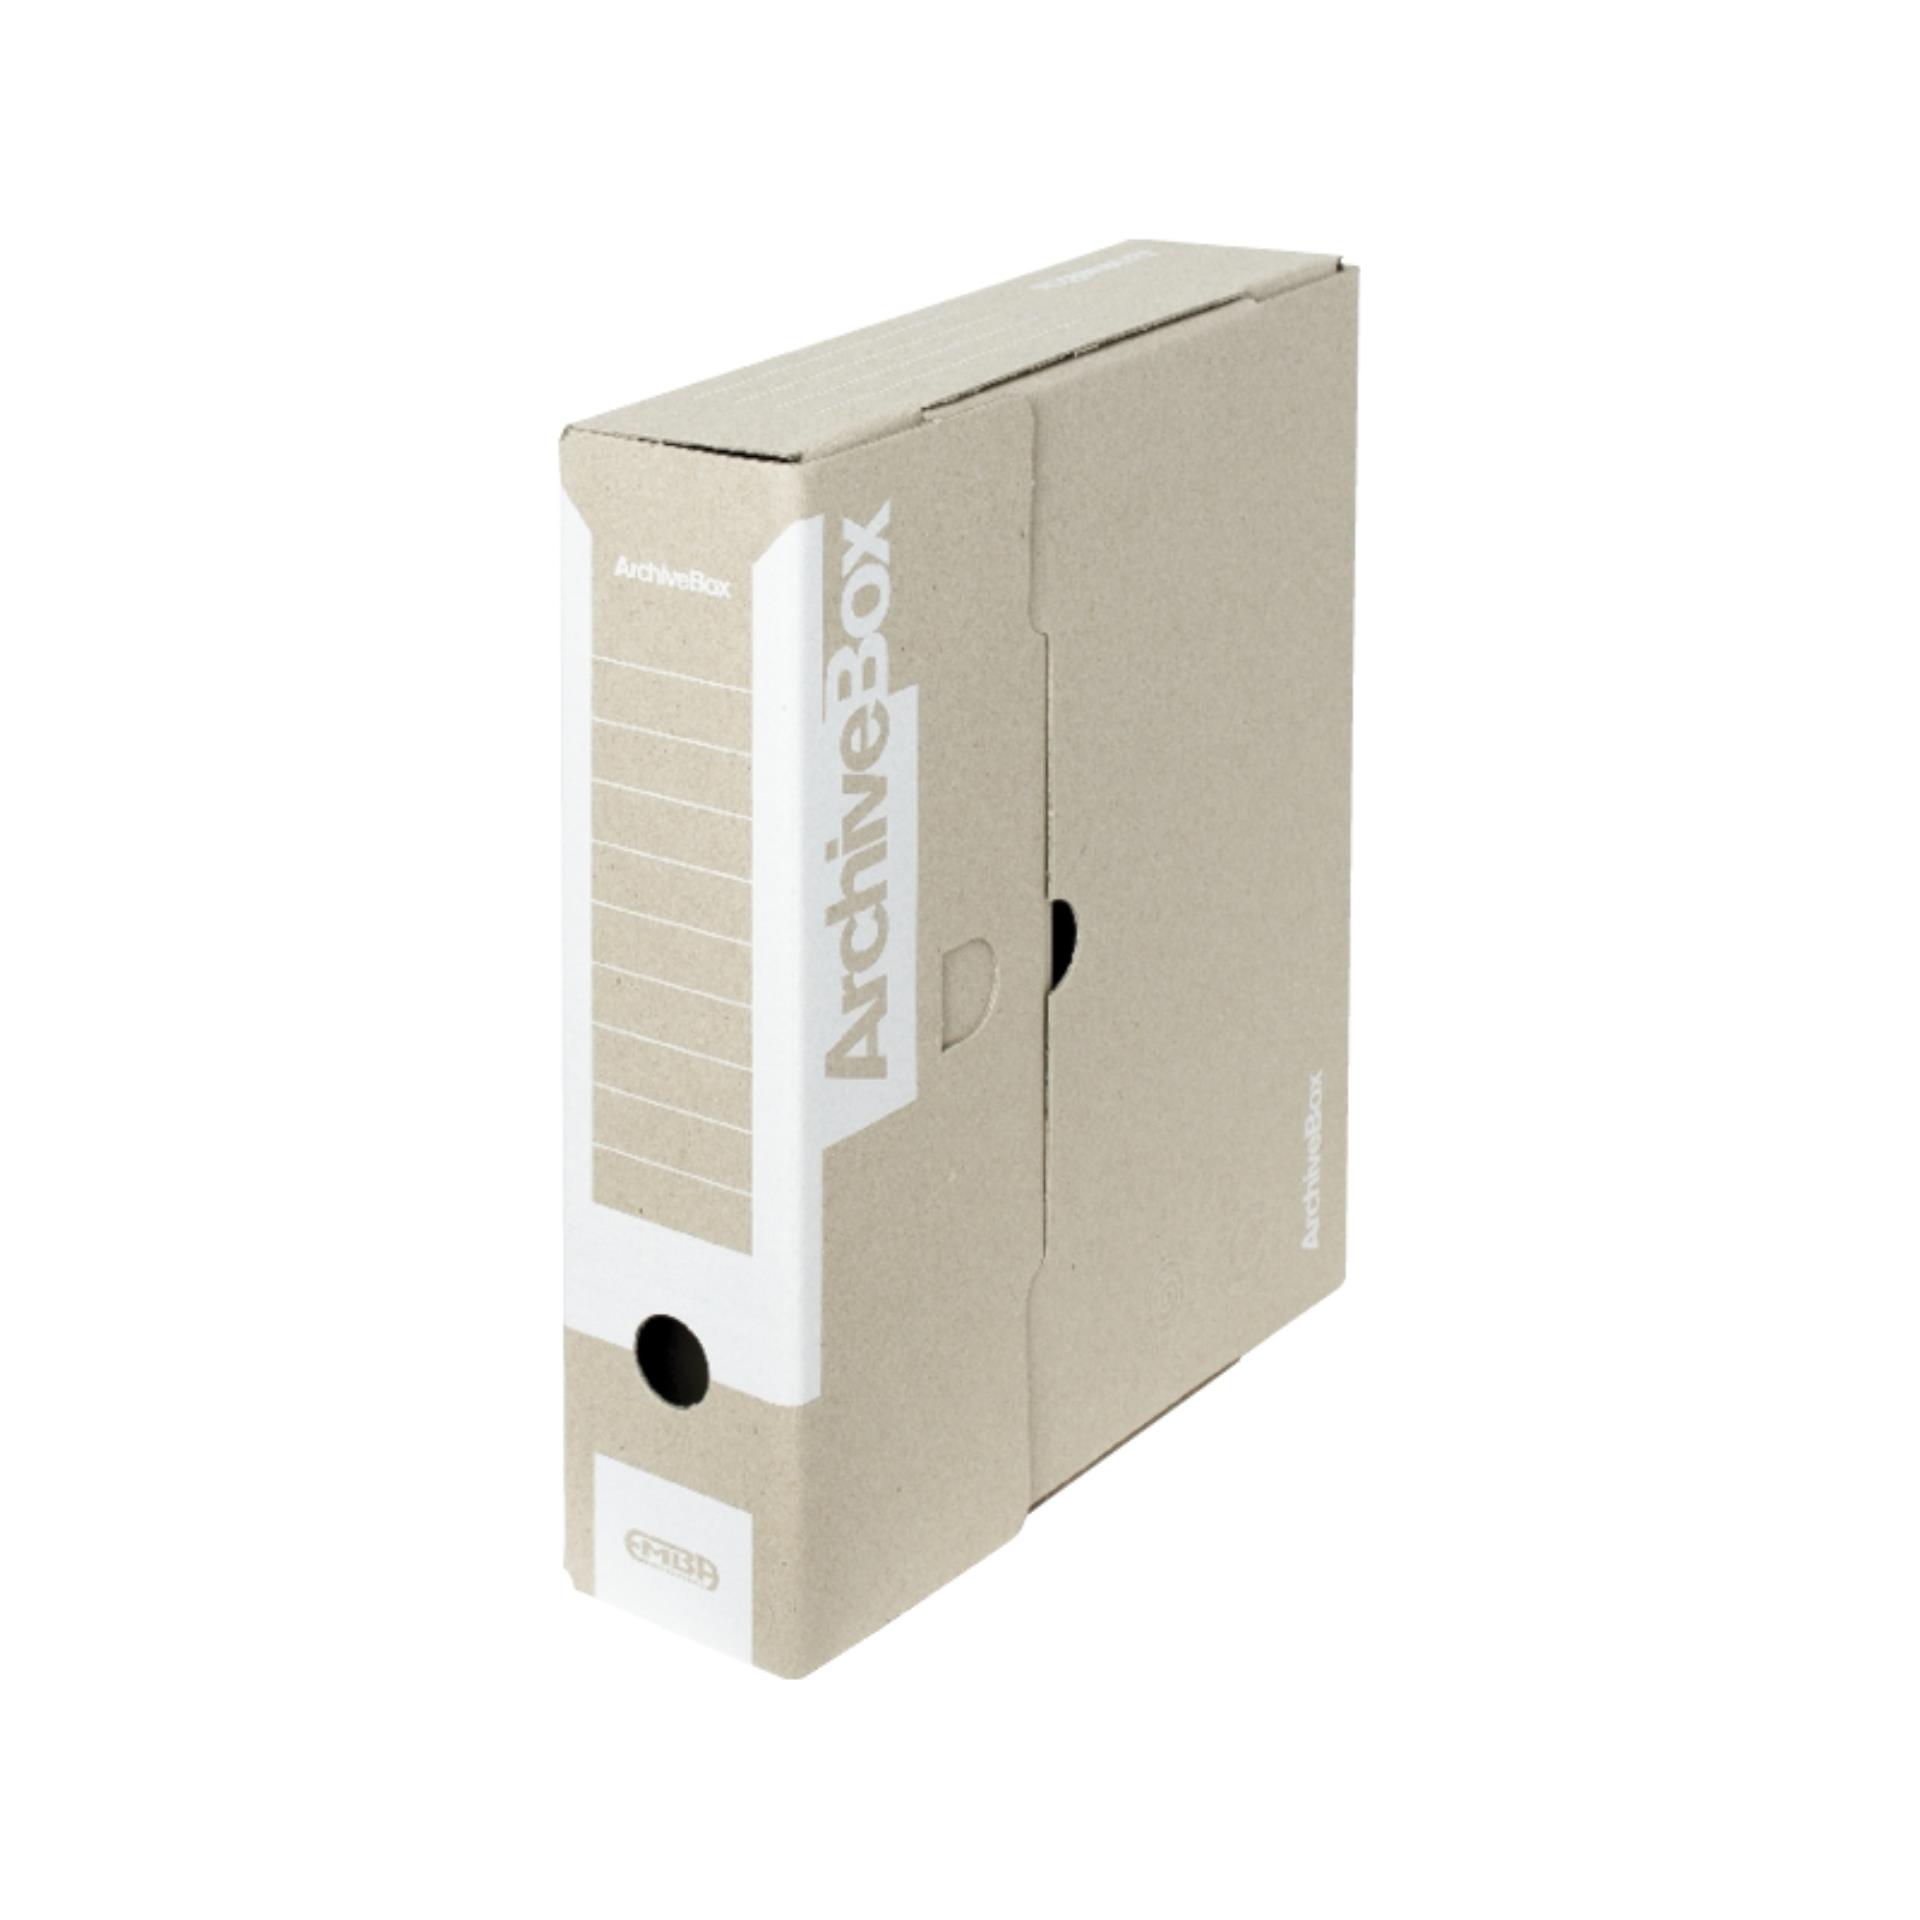 Archivační krabice Emba - bílé, 7,5 × 33 × 26 cm, 1 ks